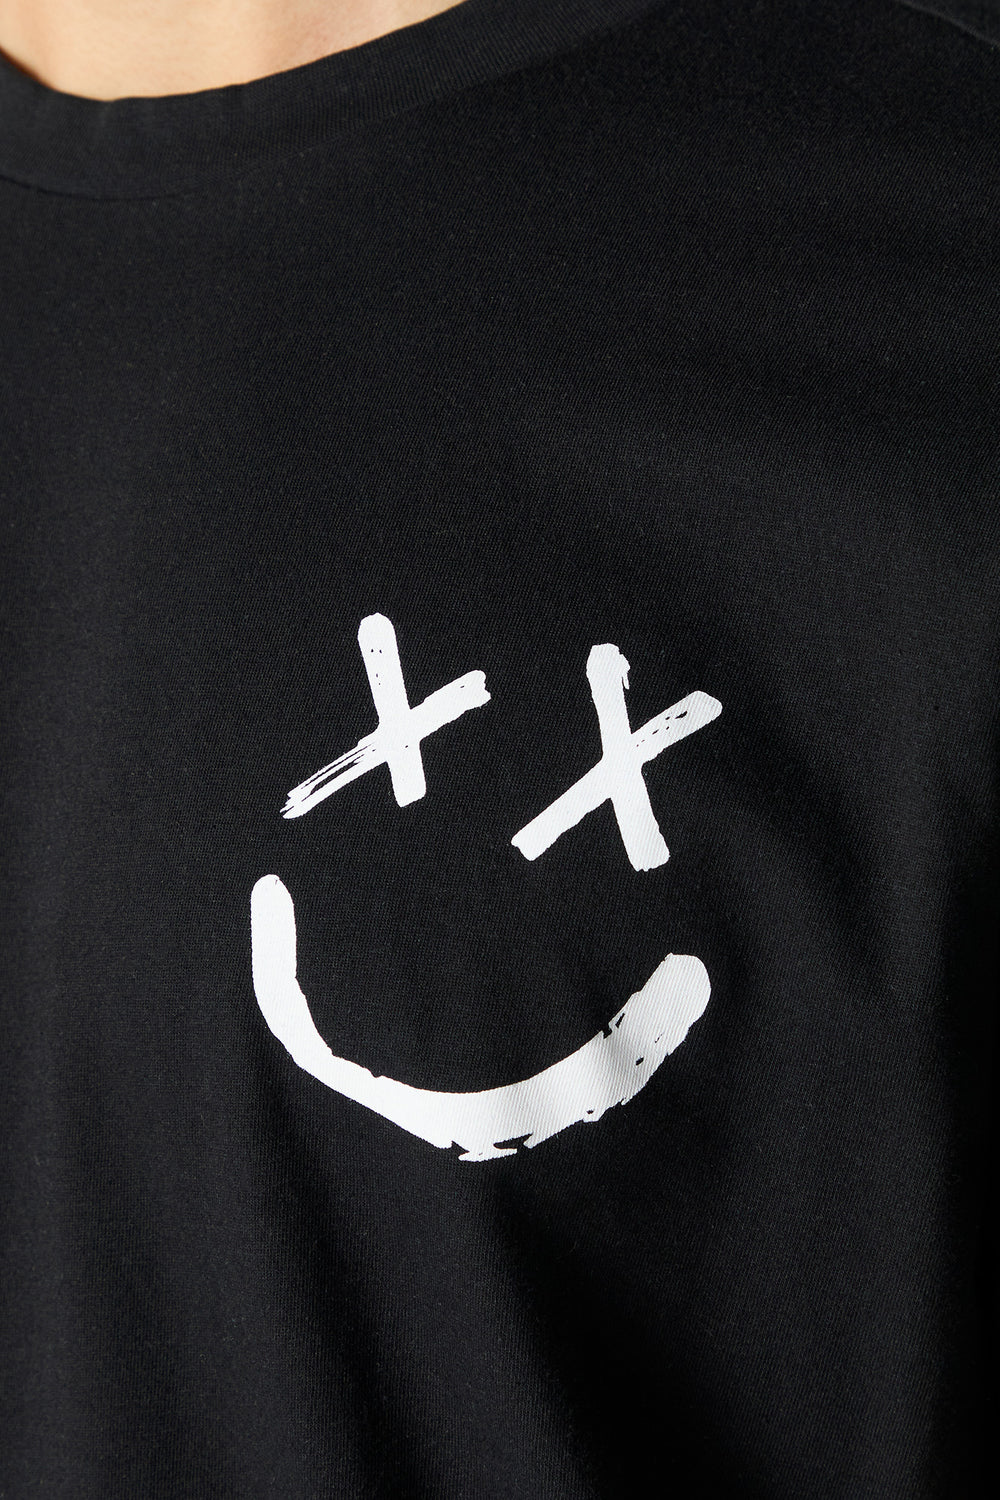 Be Happy Graphic T-Shirt Be Happy Graphic T-Shirt 5